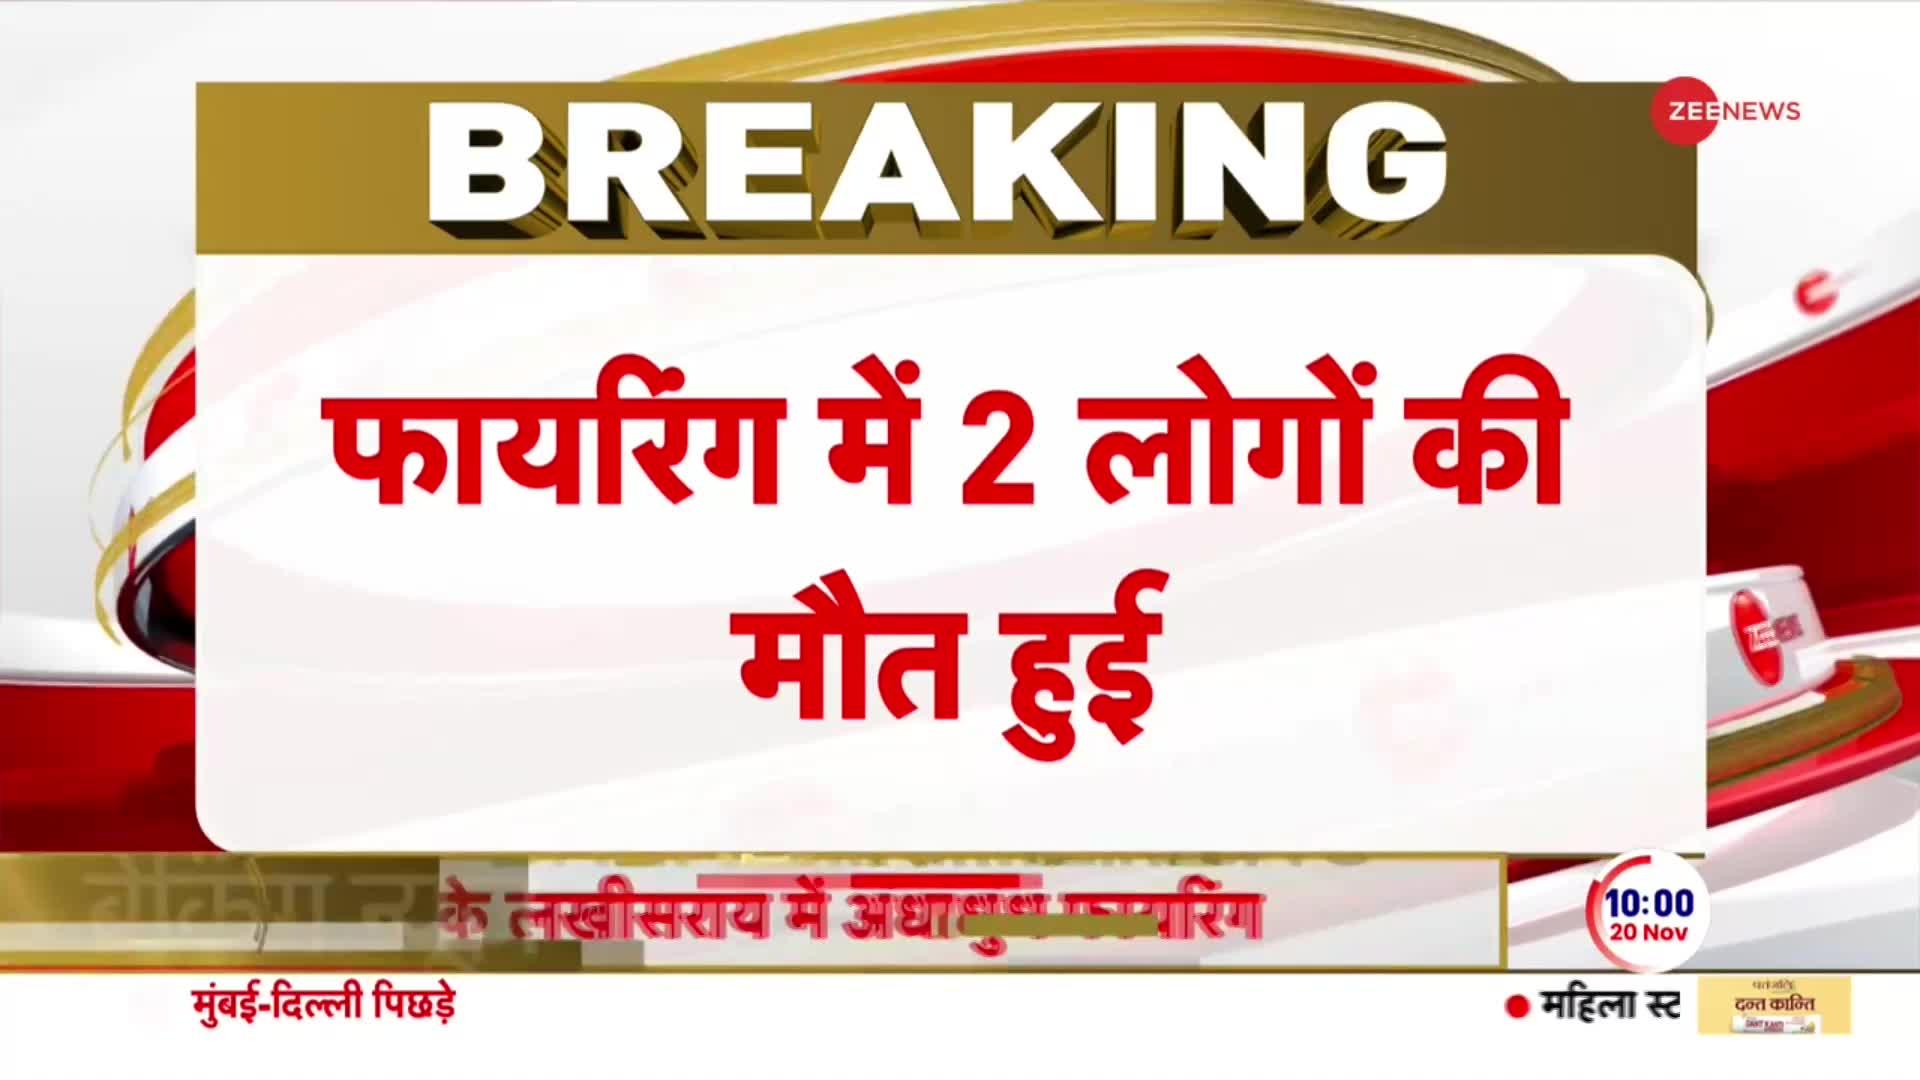 Bihar Breaking News: बिहार के लखीसराय में ताबड़तोड़ गोलीबारी, 2 लोगों की मौत